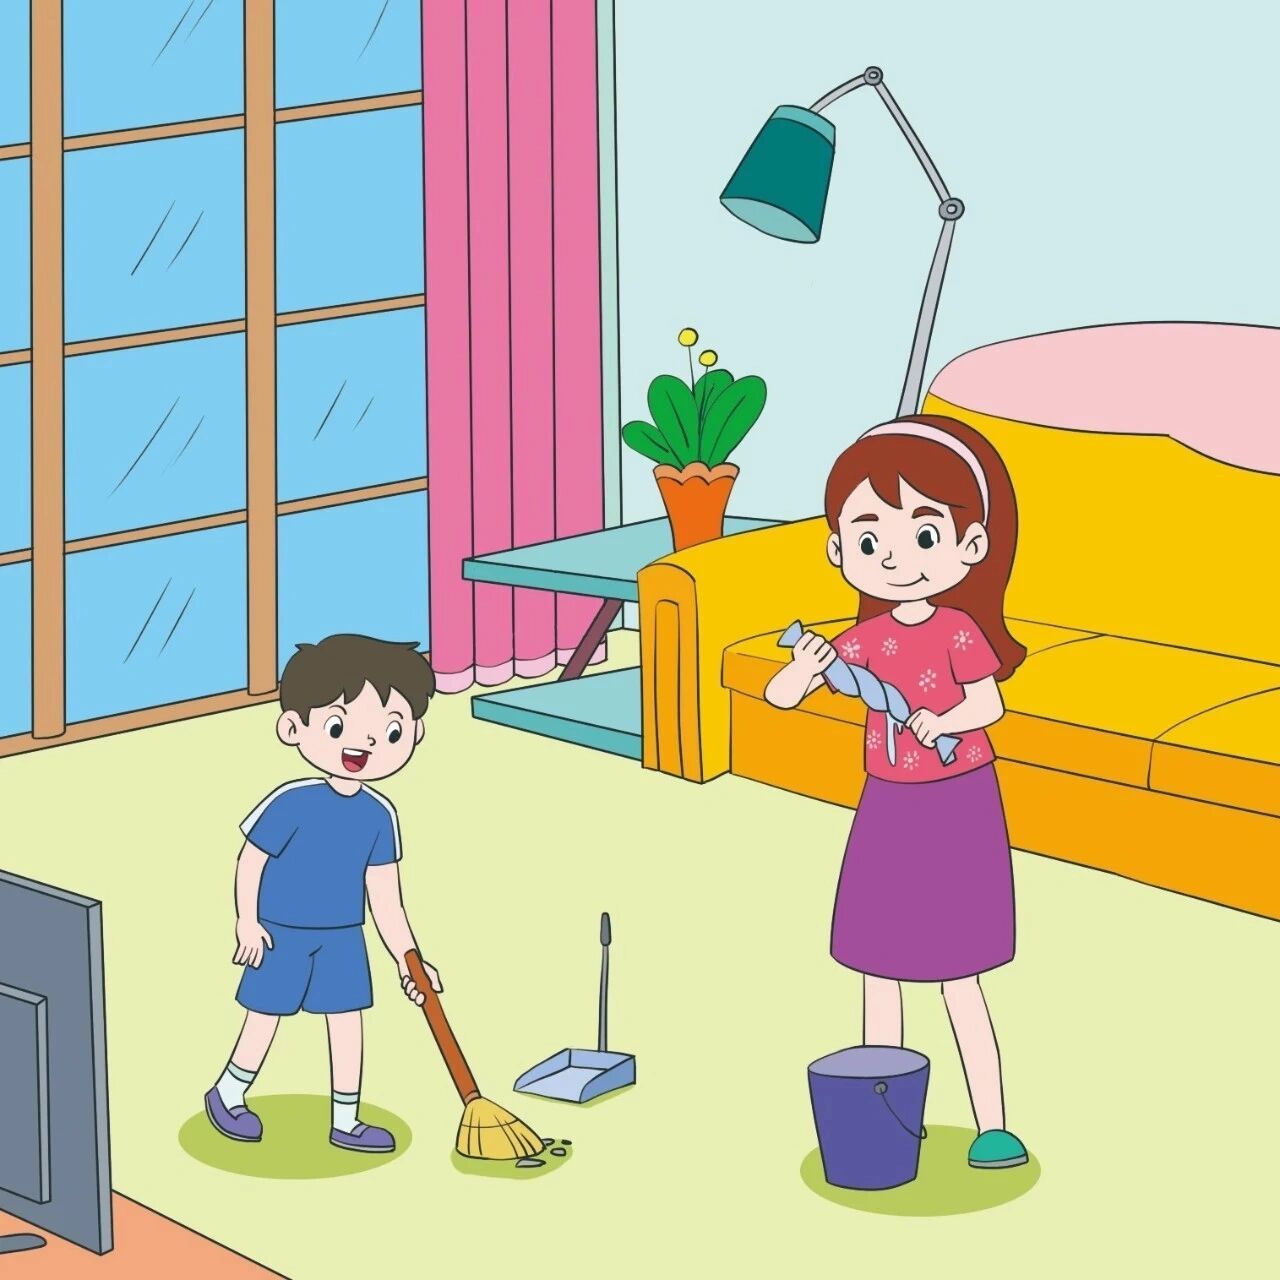 看图写话 大扫除 星期六的上午,小华正在家里玩积木,他看见妈妈一吃完